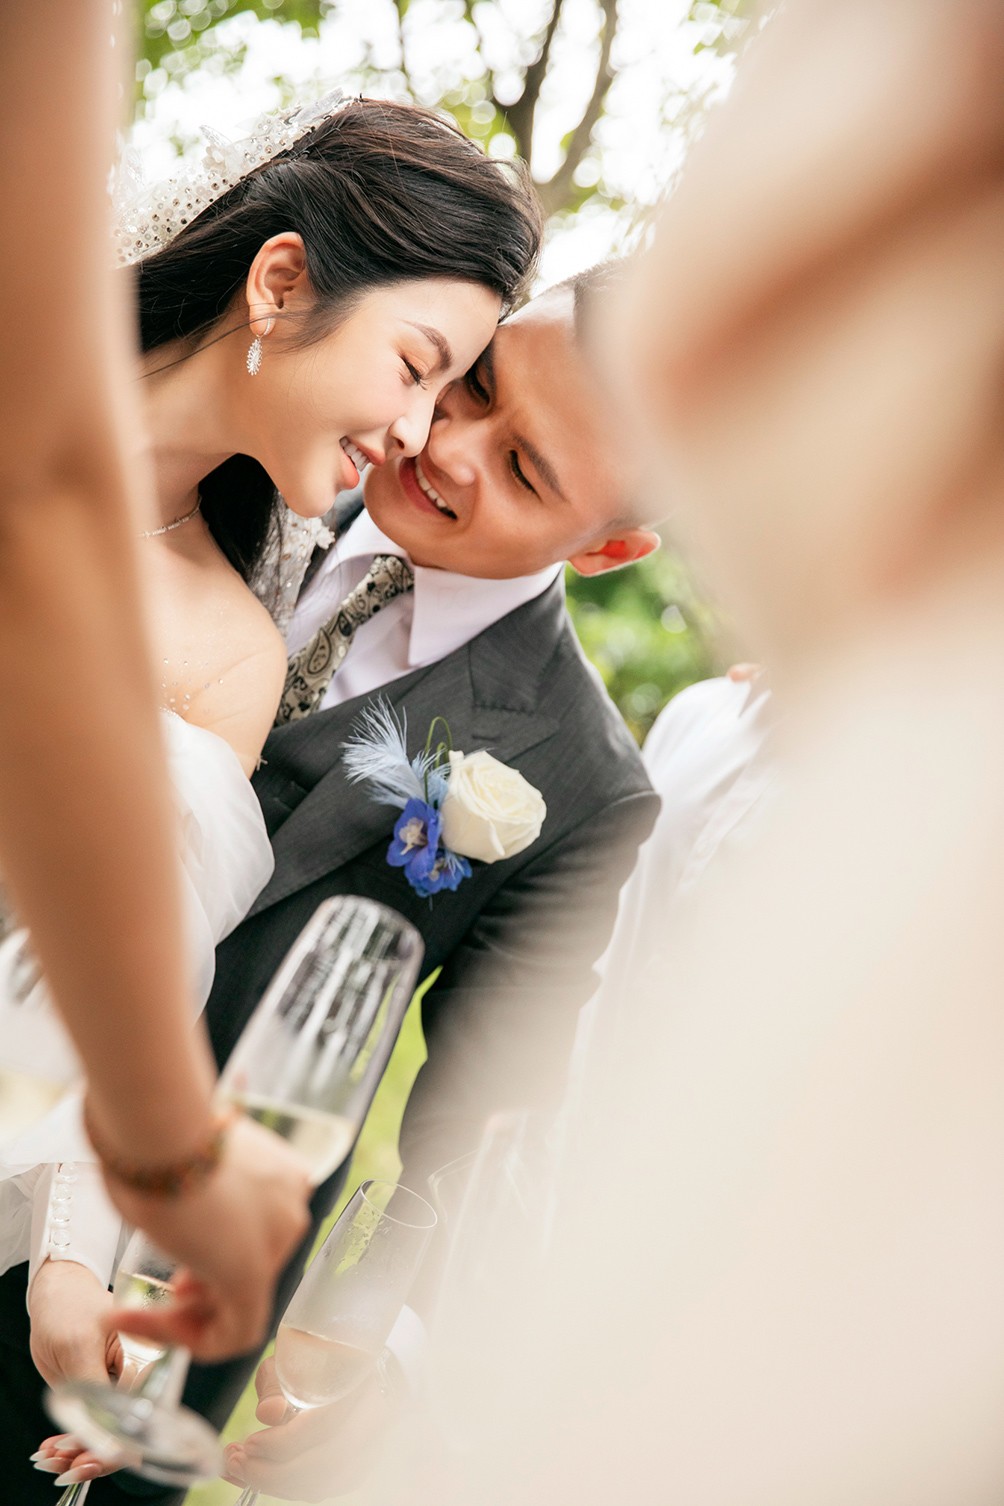 Đám cưới Quang Hải - Chu Thanh Huyền: Cô dâu thay 2 váy cưới, chú rể bảnh bao, lịch lãm - 18